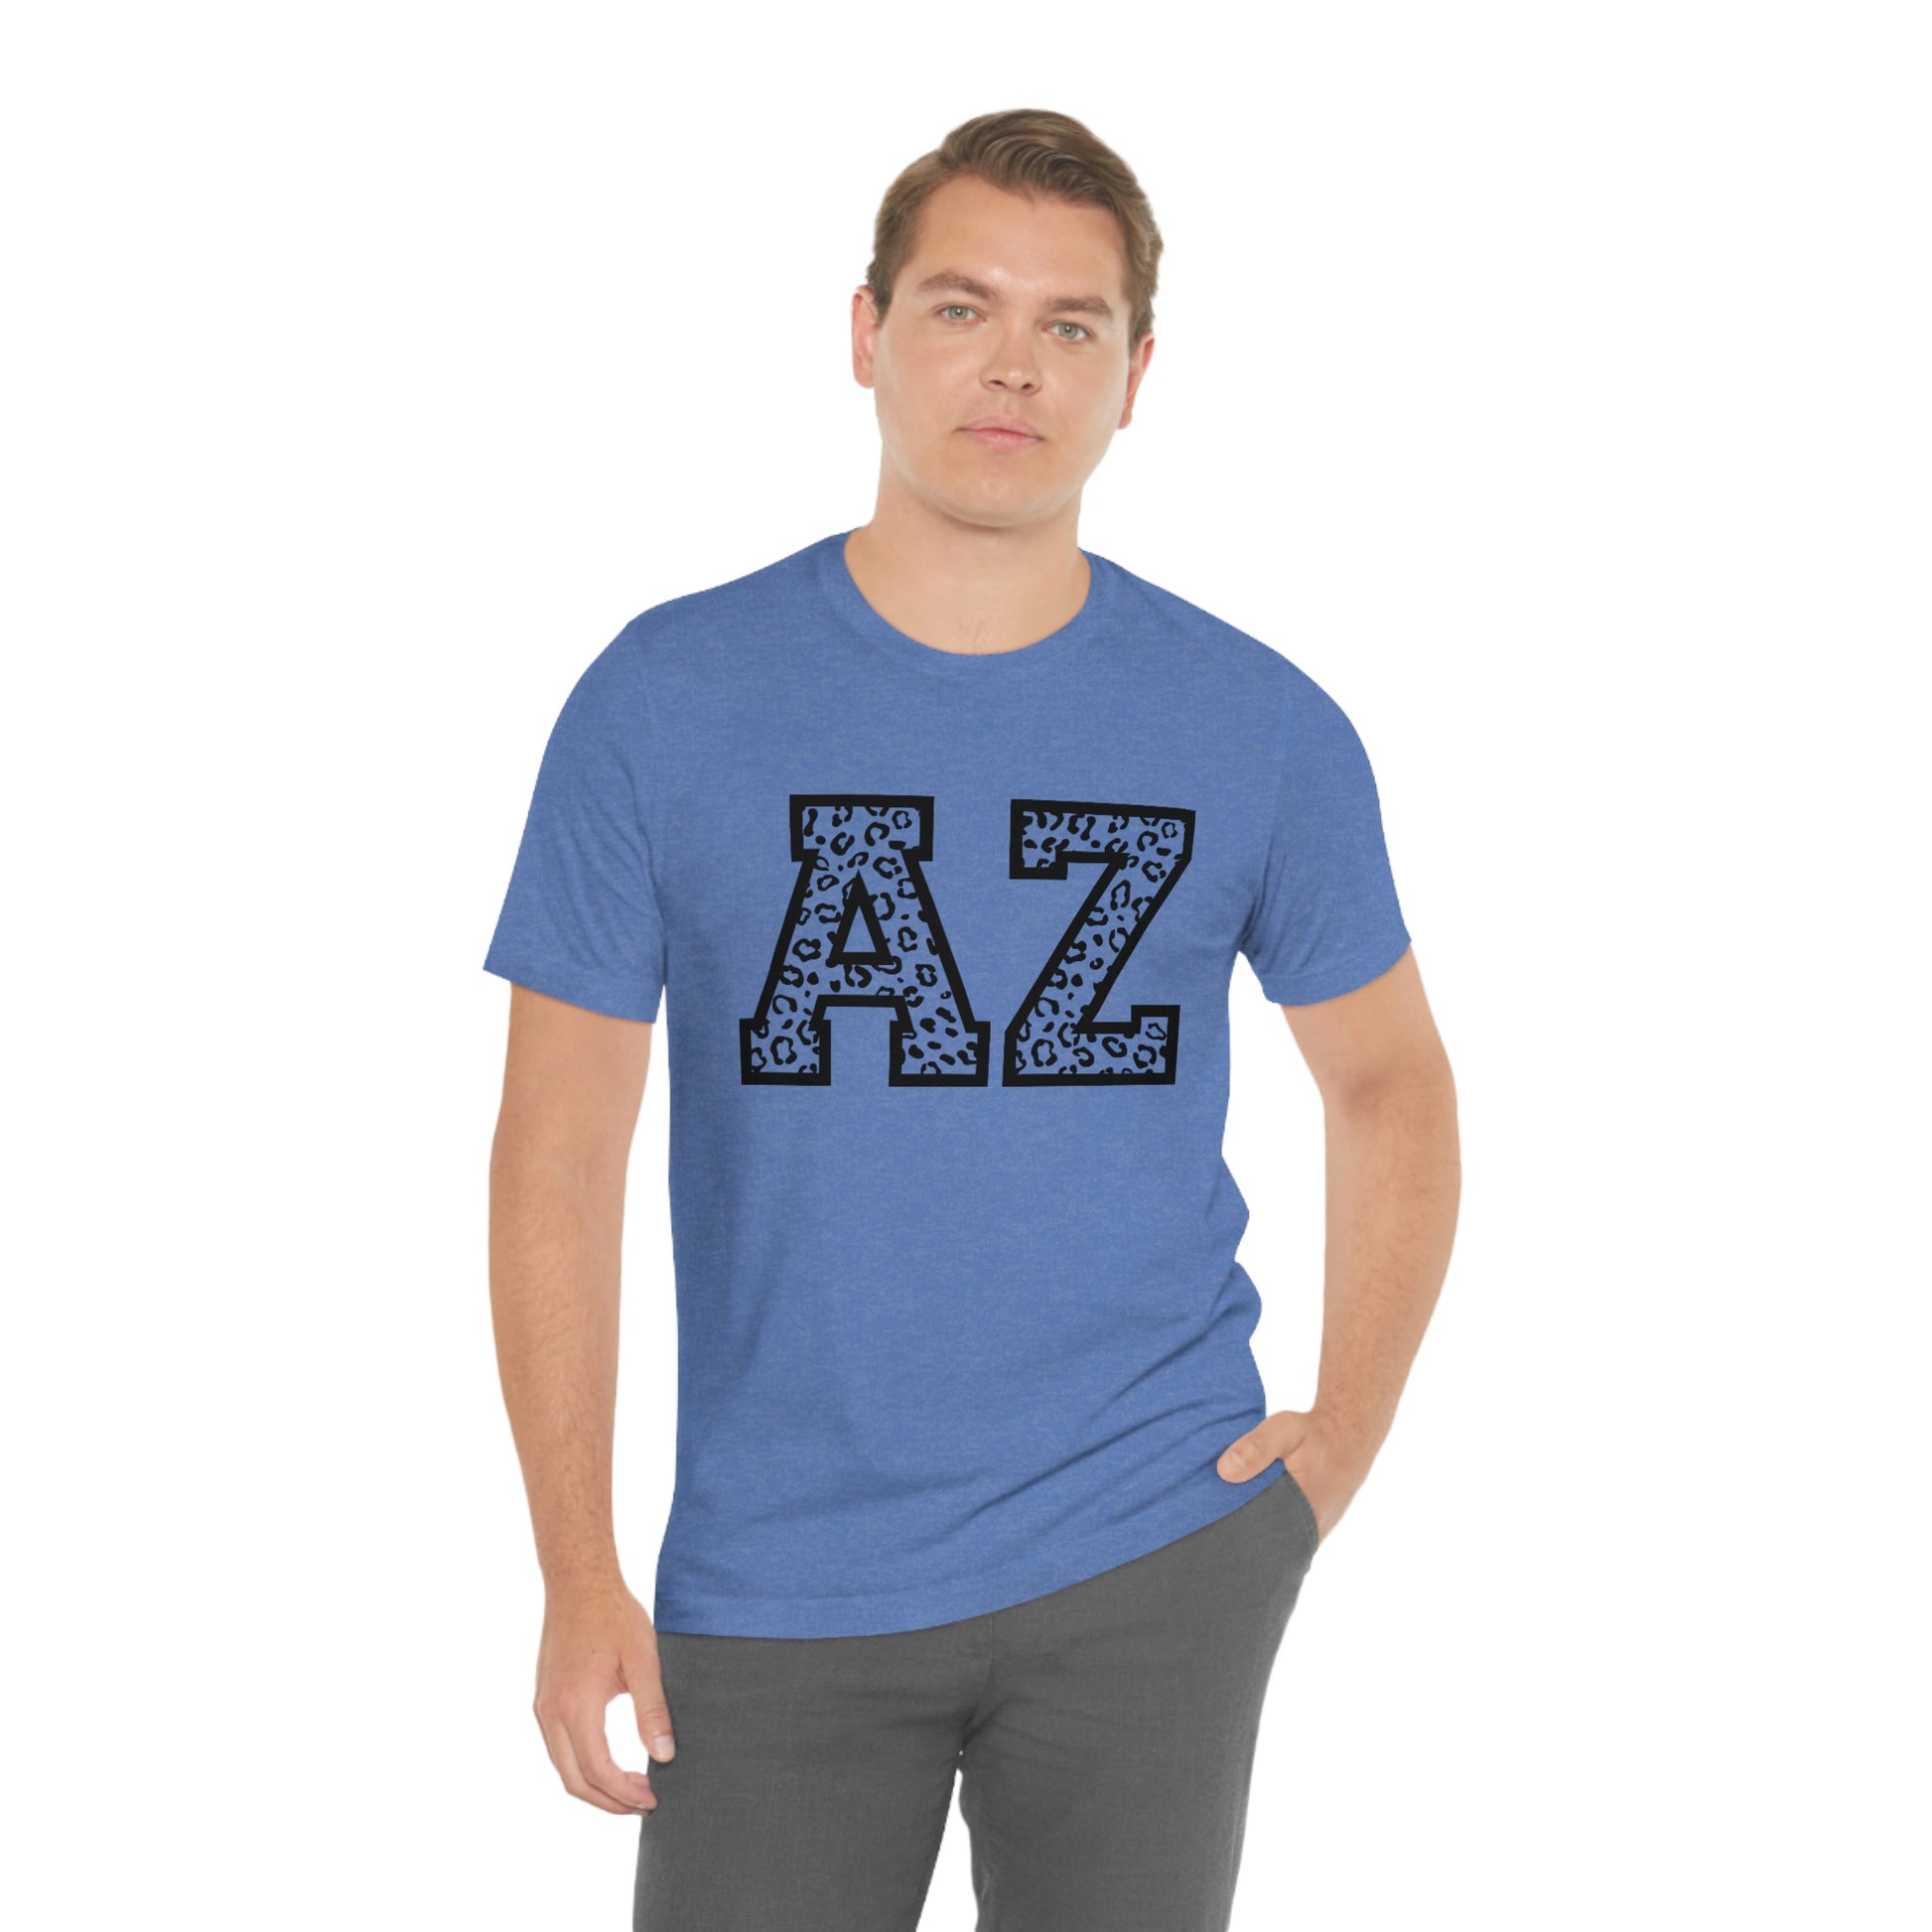 Arizona AZ Leopard Print Unisex Jersey Short Sleeve Tee Tshirt T-shirt